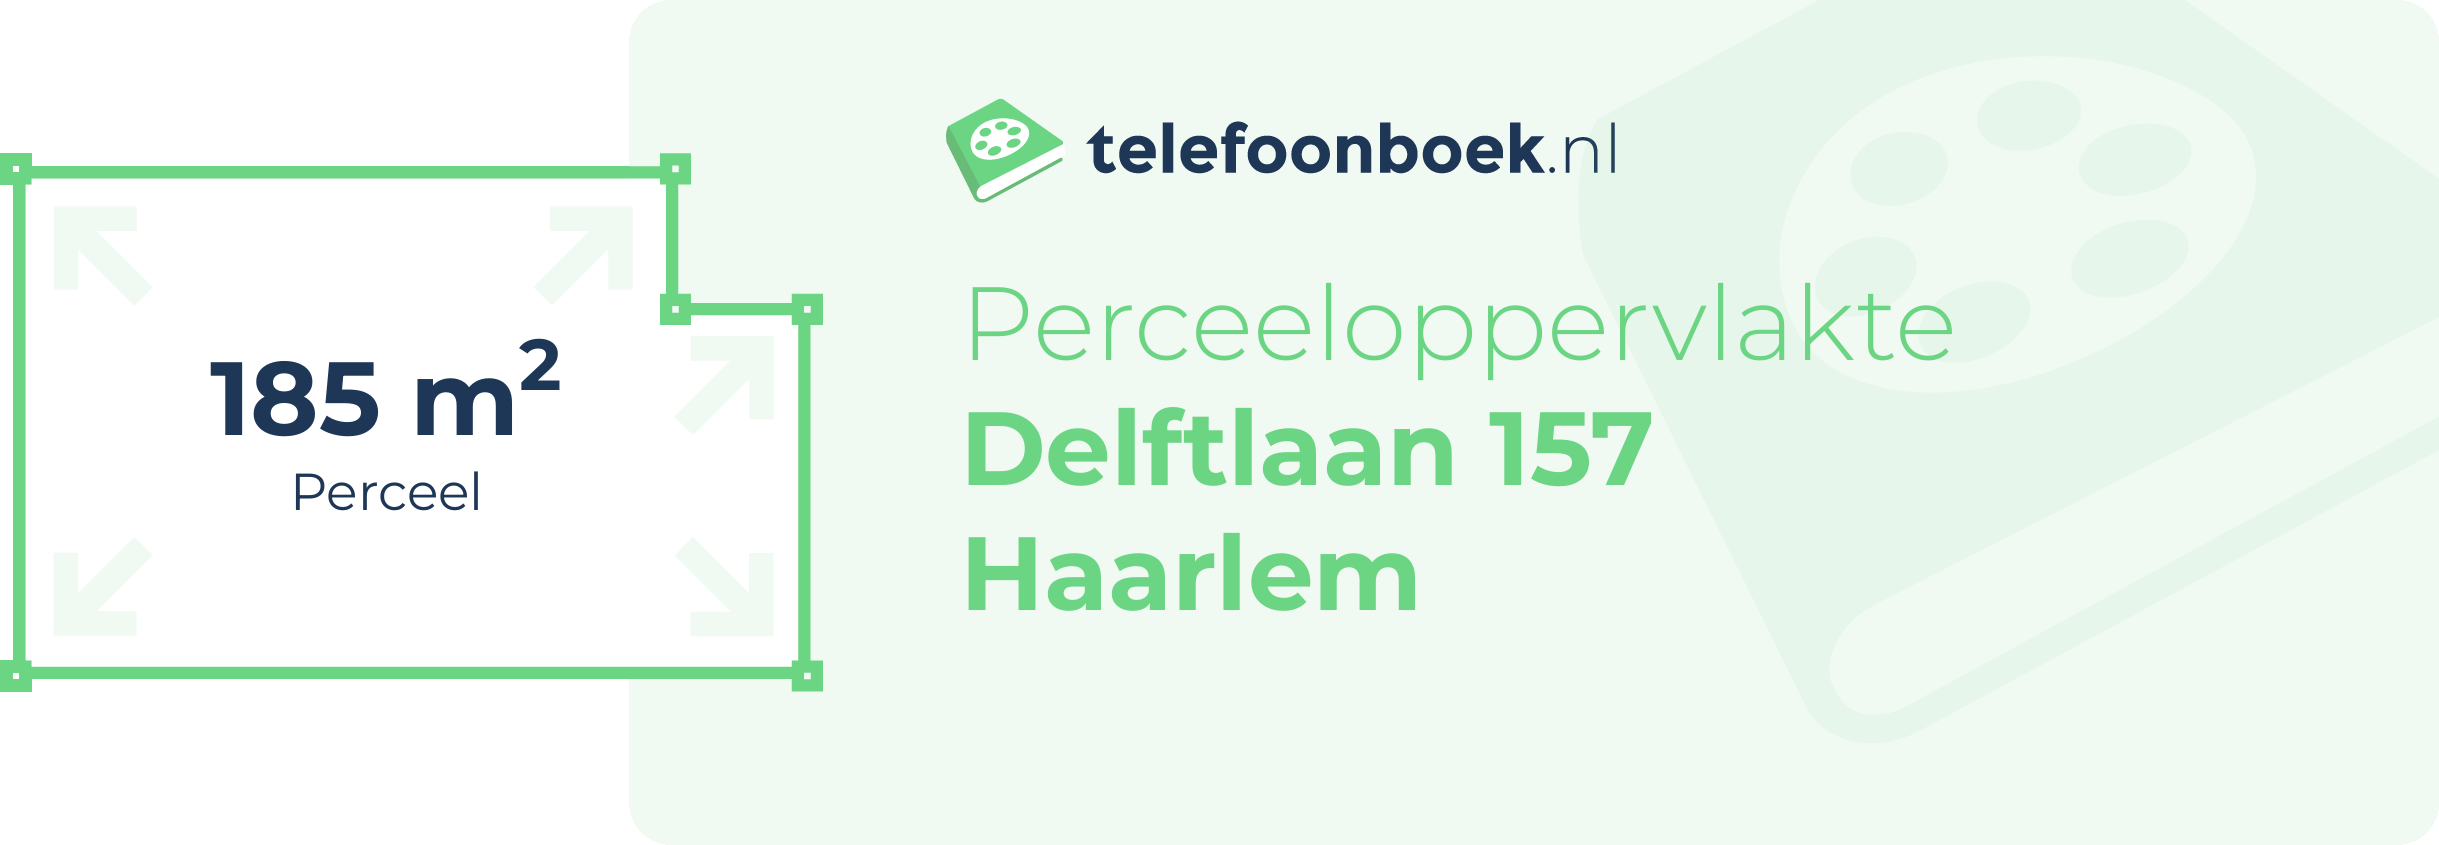 Perceeloppervlakte Delftlaan 157 Haarlem